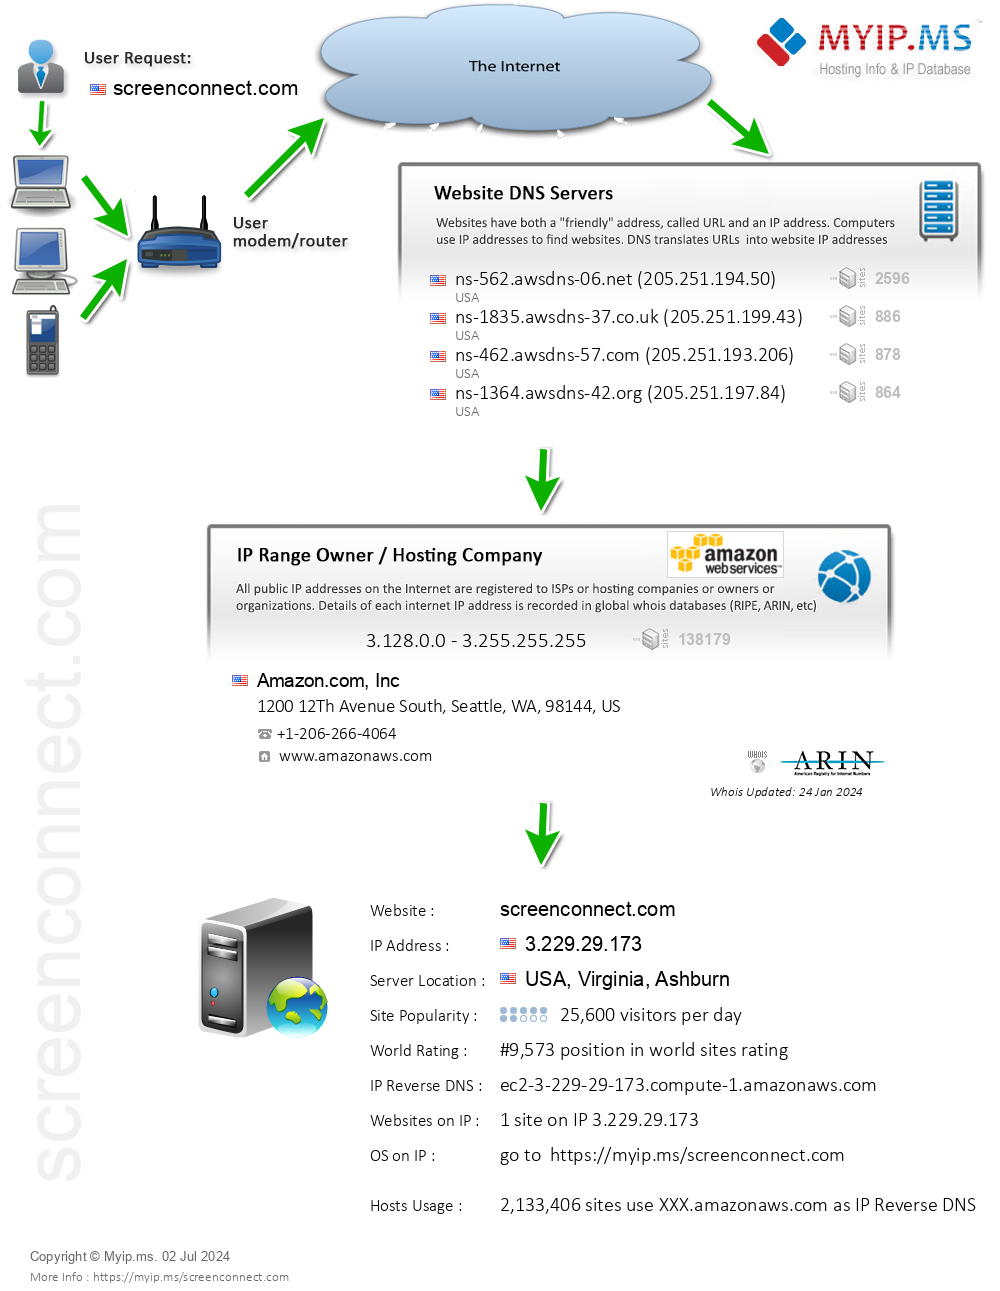 Screenconnect.com - Website Hosting Visual IP Diagram